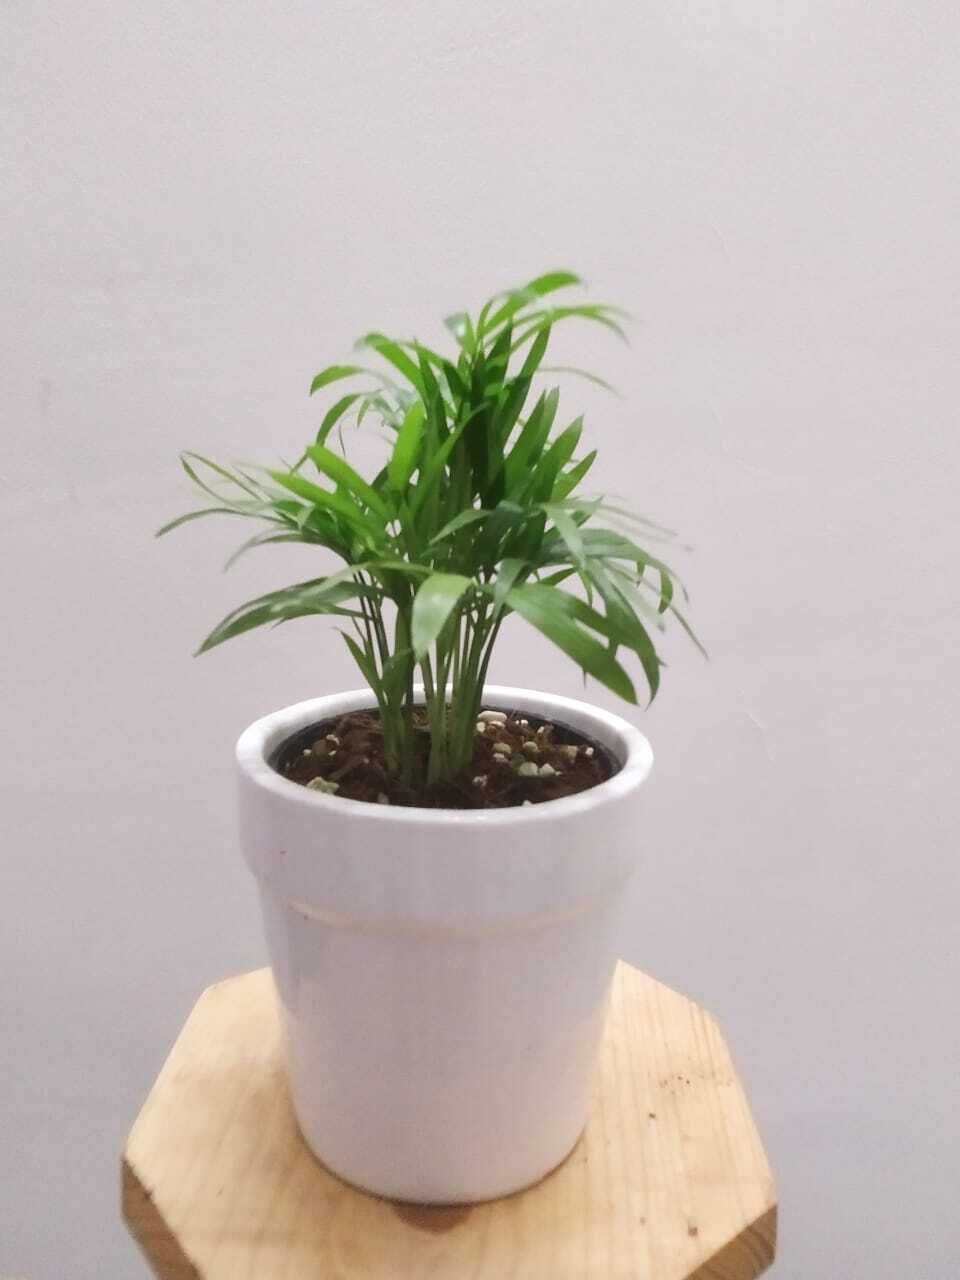 Chamaedorea Palm Plant in 4.5 inches White Ceramic Pot